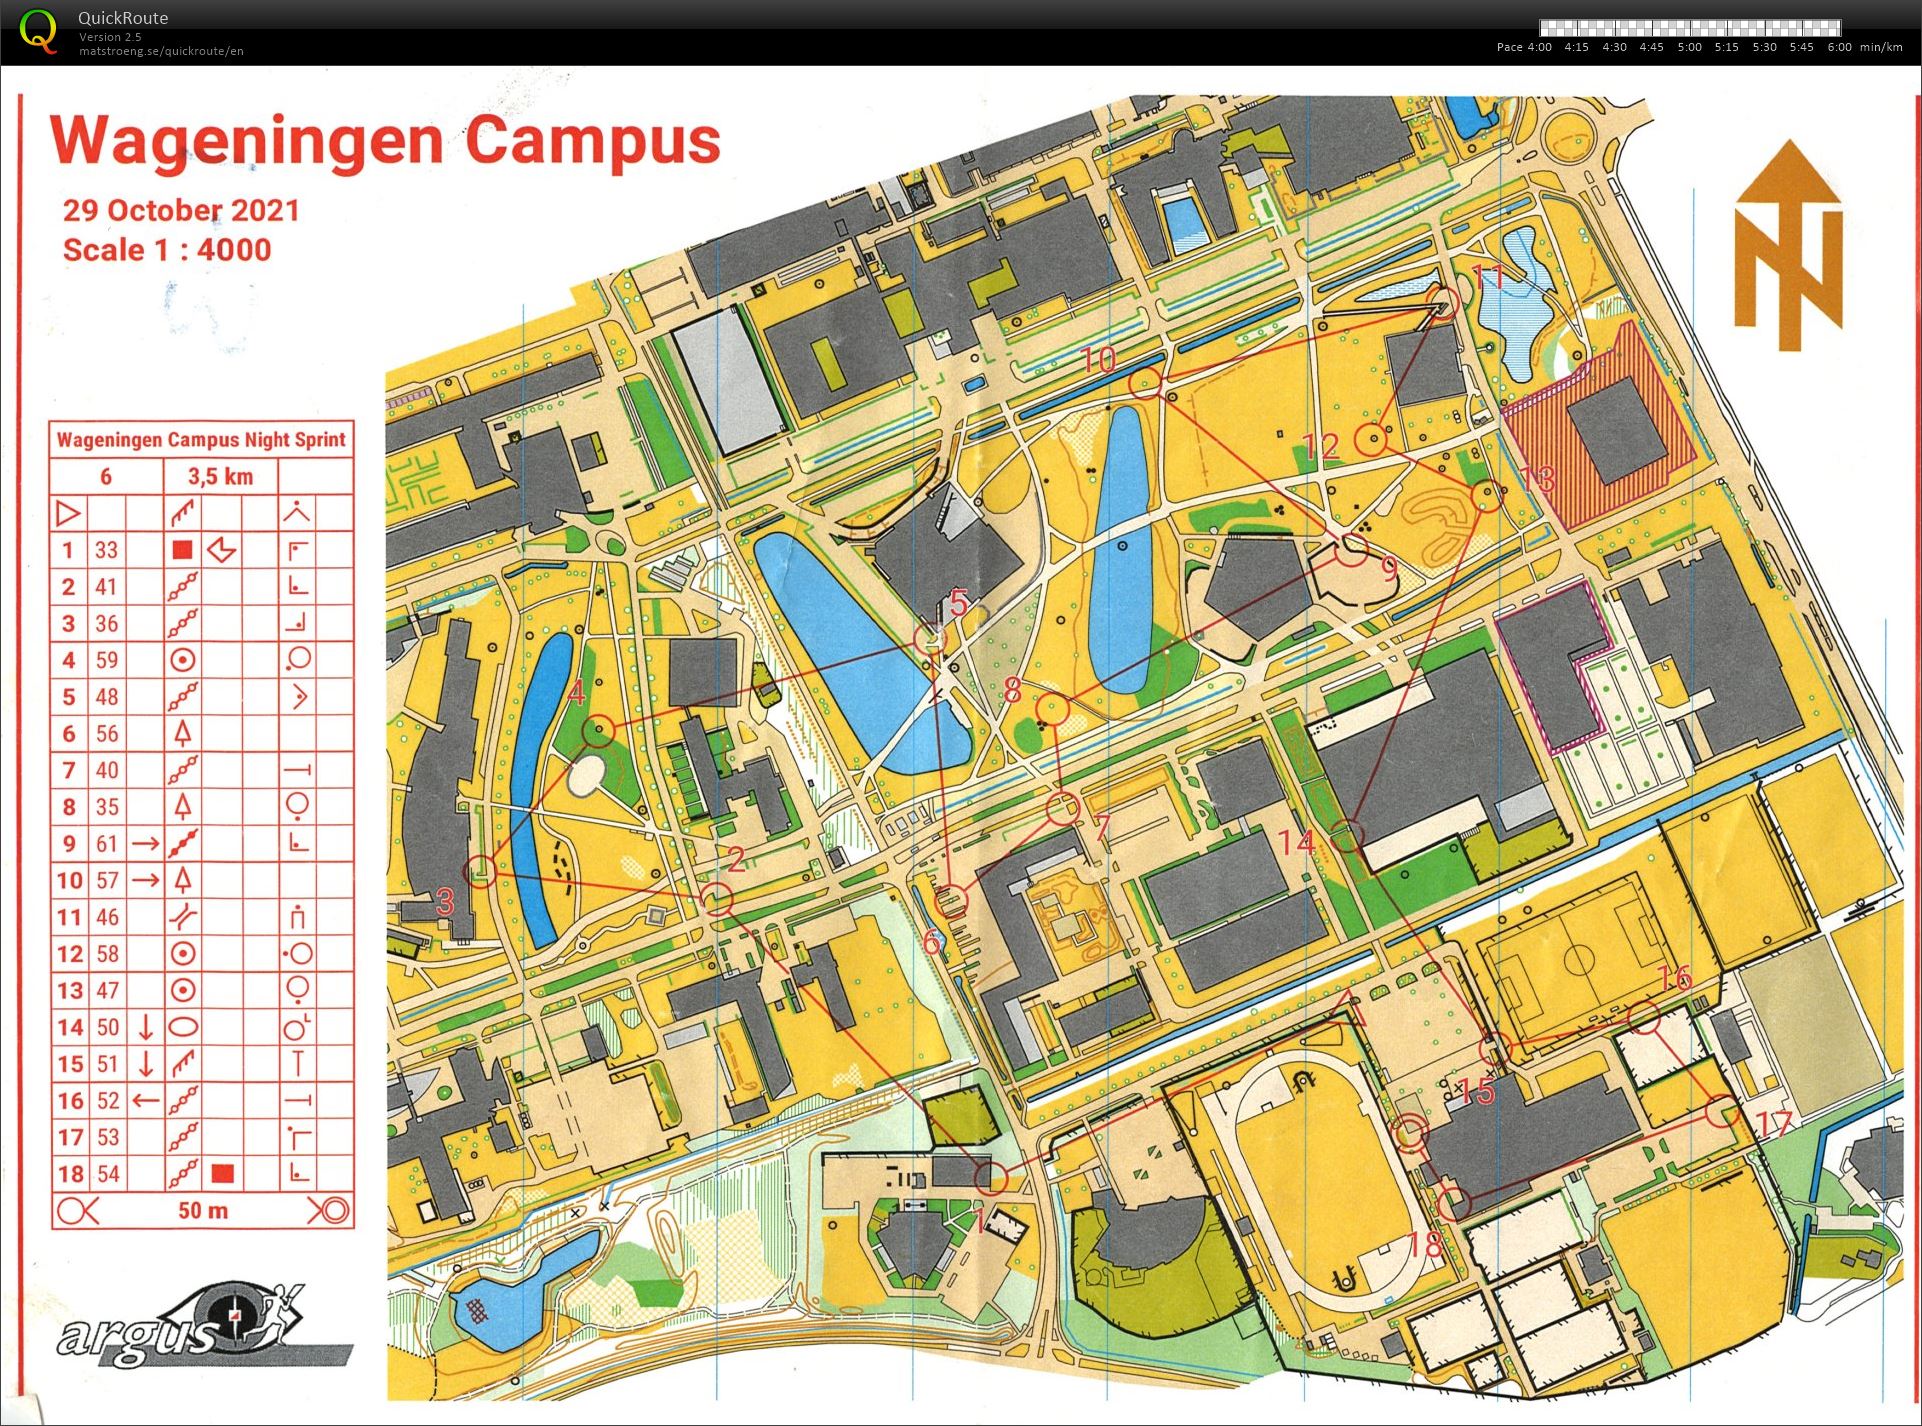 Night-relay Wageningen Campus (29-10-2021)